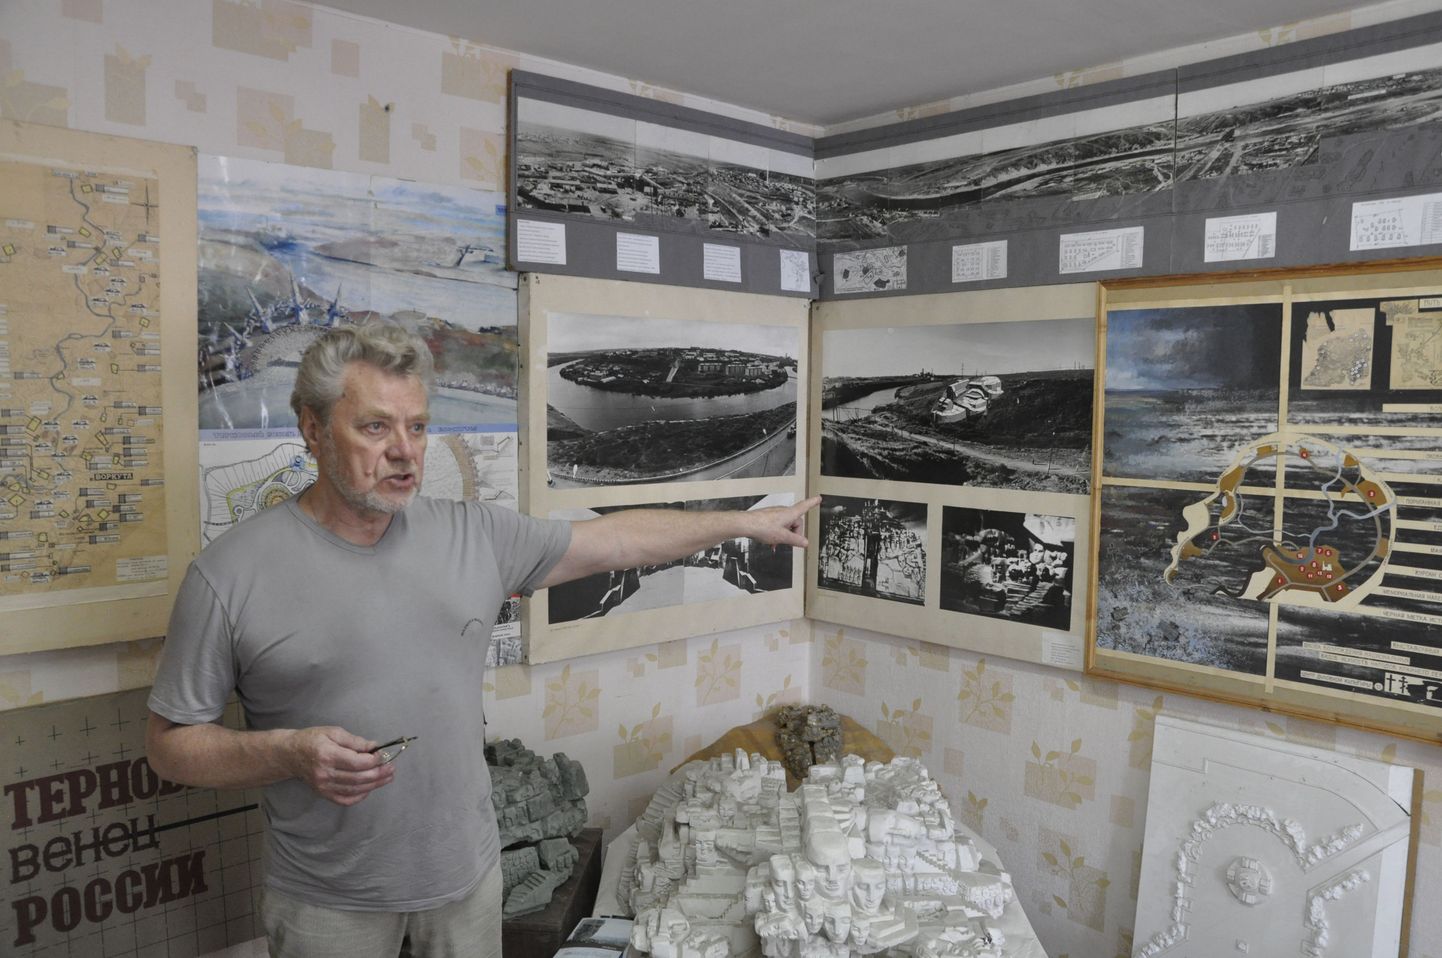 Виталий Трошин в своем ателье, все стены которого увешаны историческими фотографиями и эскизами различных памятных знаков.